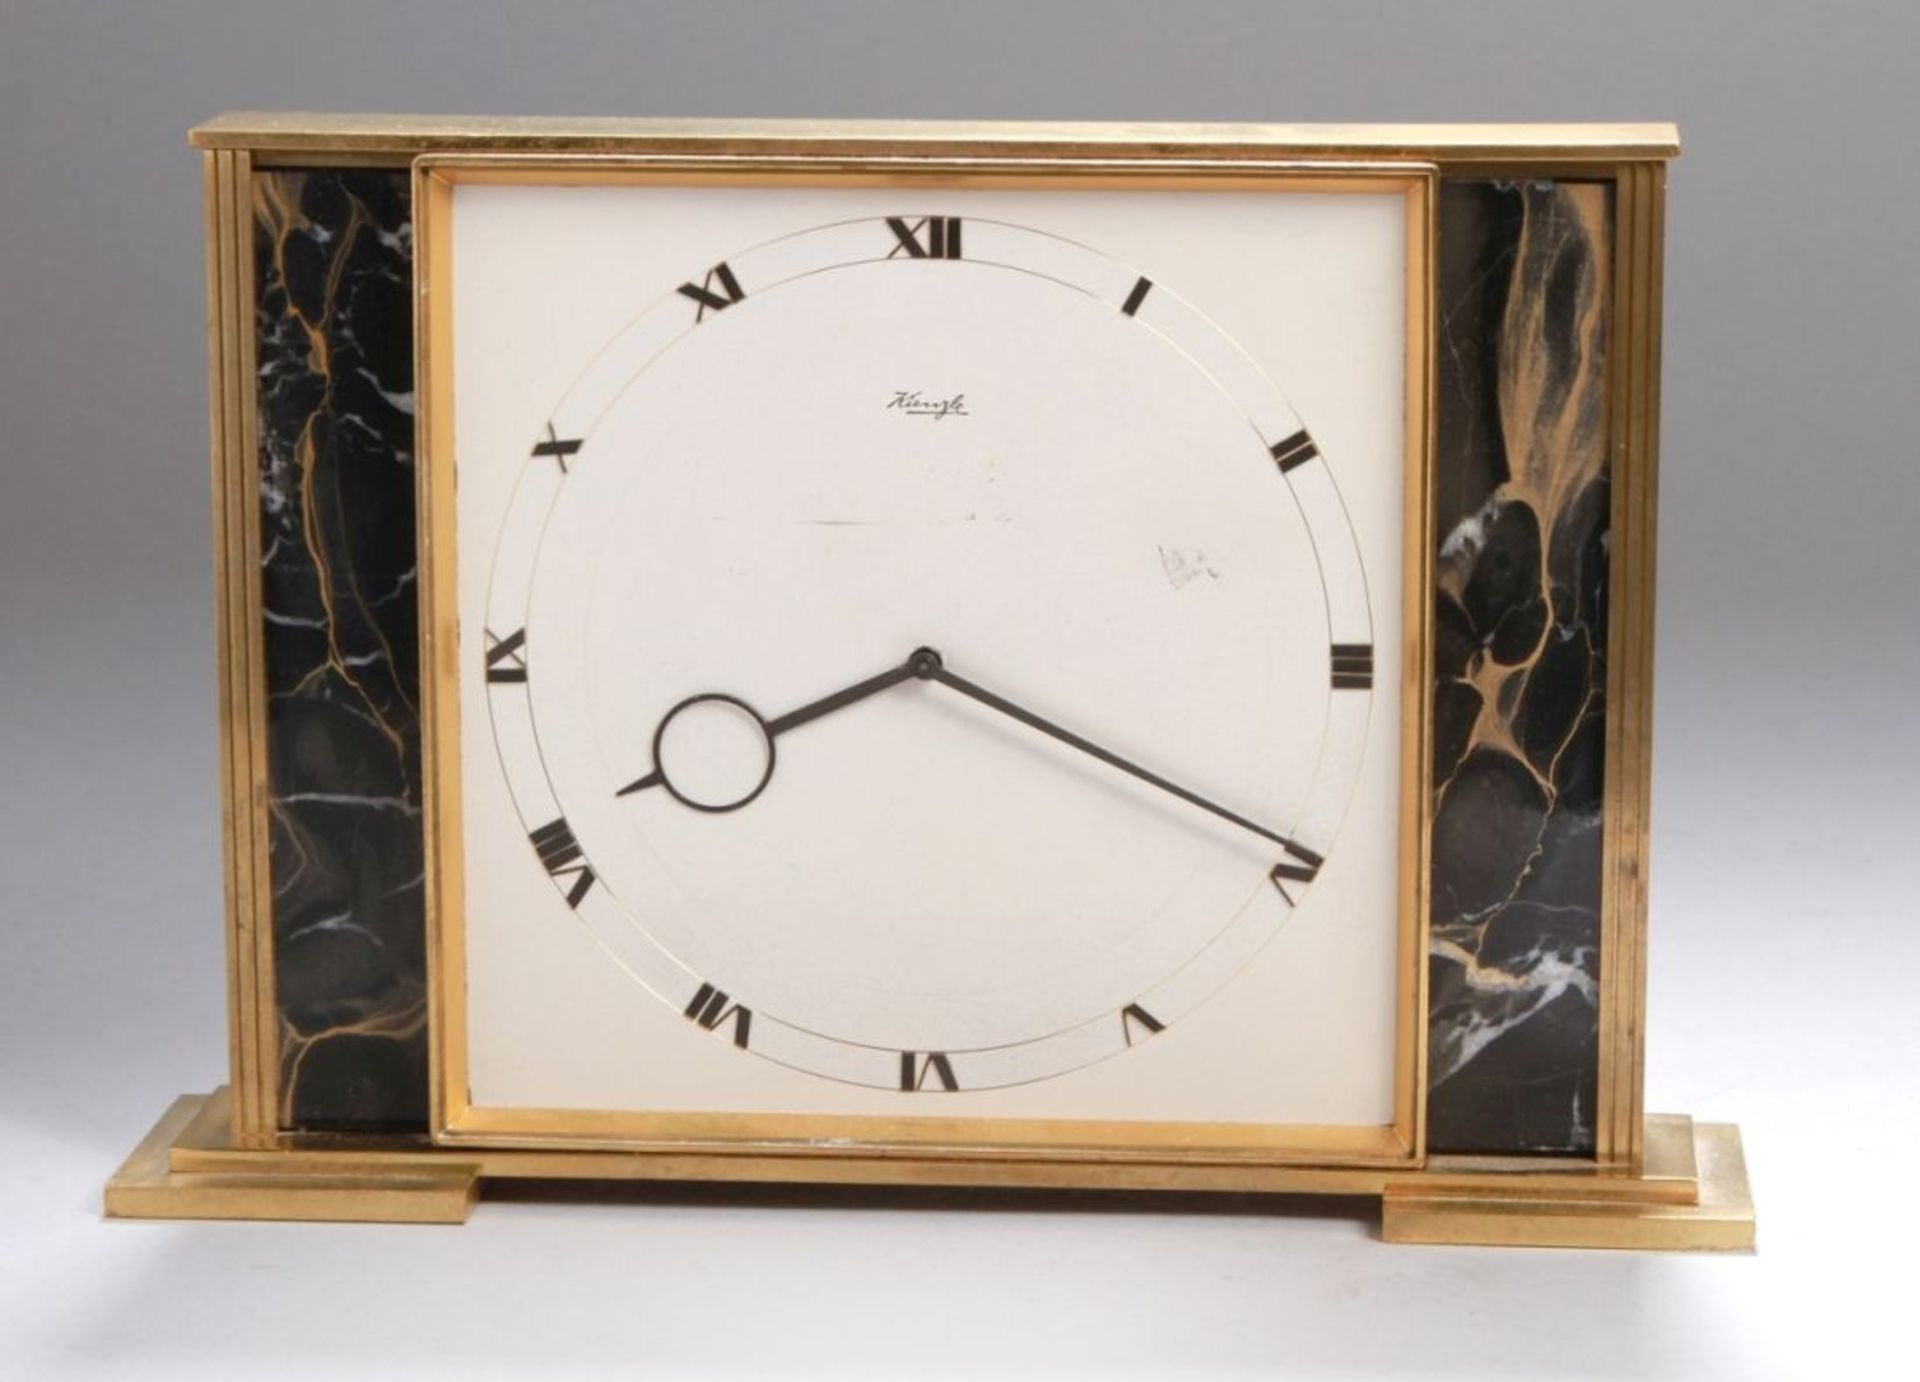 Tisch-Uhr, Kienzle, Mitte 20. Jh., mechanisches Werk mit Handaufzug, Messingrahmung, H 16cm, in